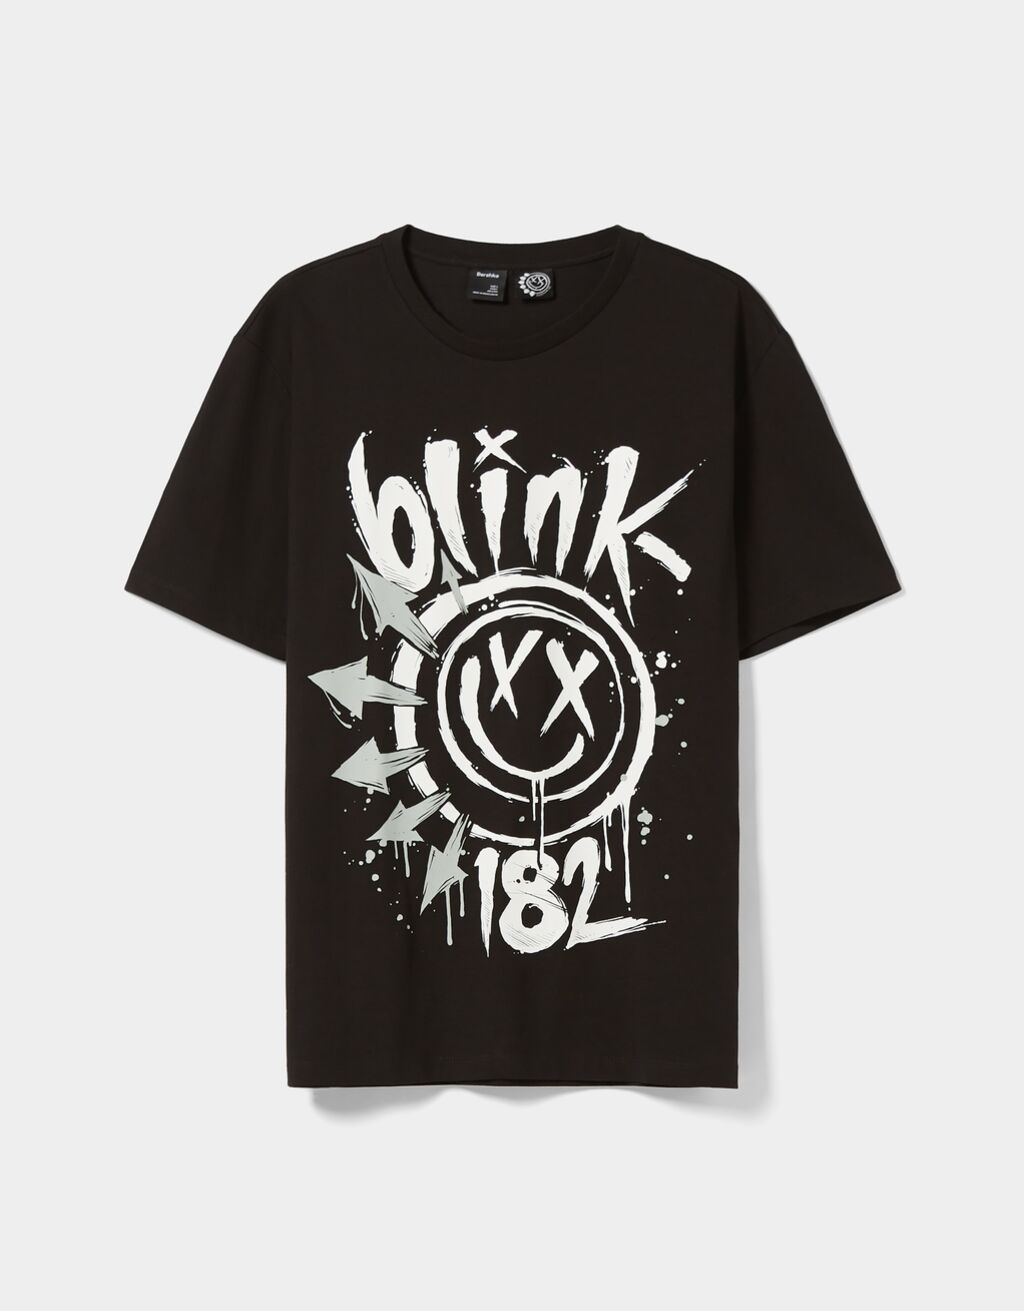 Tričko s krátkym rukávom pravidelného strihu s potlačou Blink 182